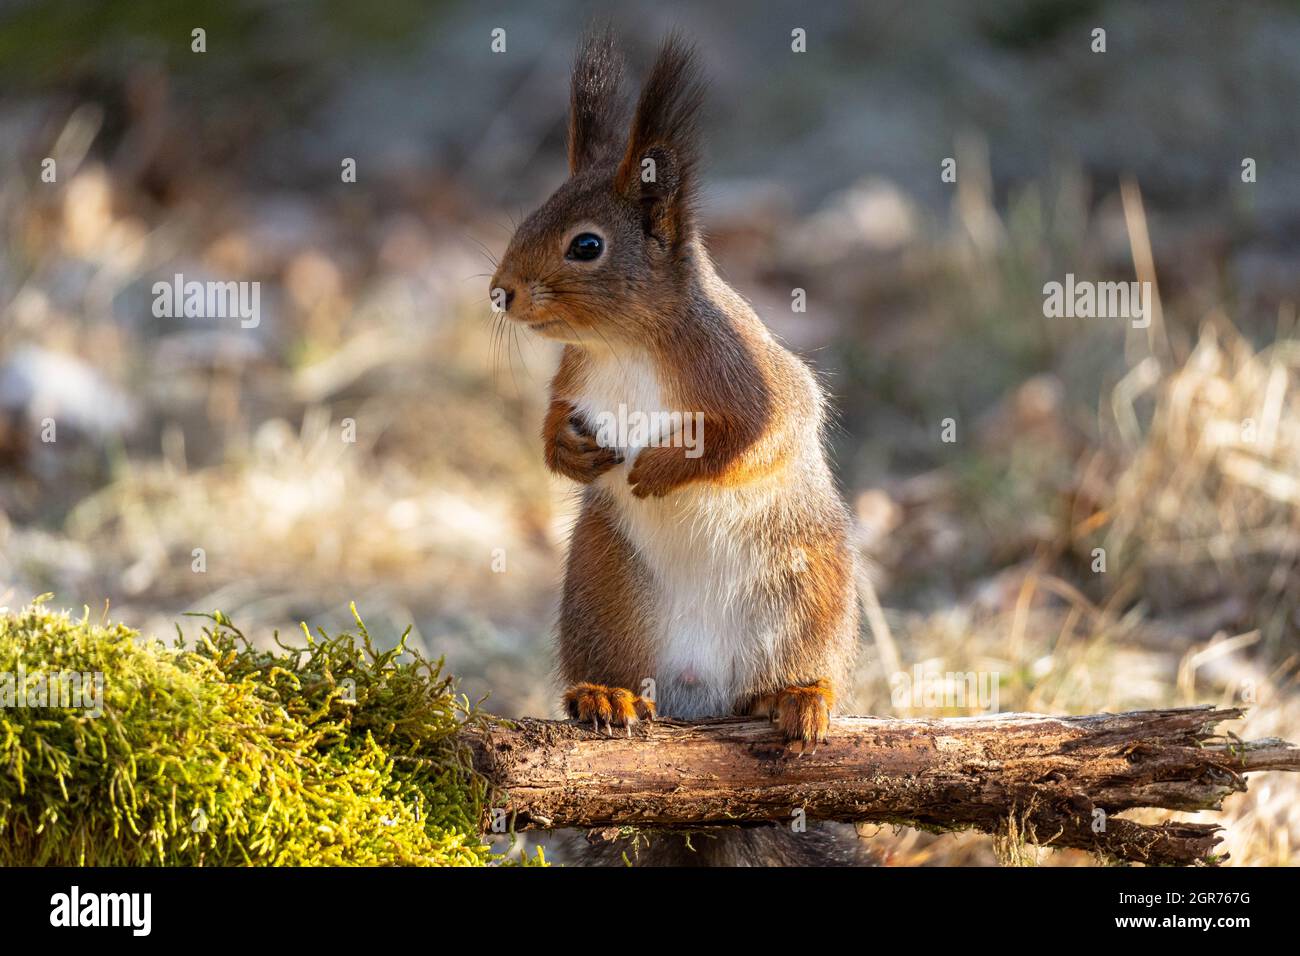 Nahaufnahme eines niedlichen kleinen Eichhörnchen, das im Morgenlicht auf Einem Mossy-Zweig steht. Stockfoto